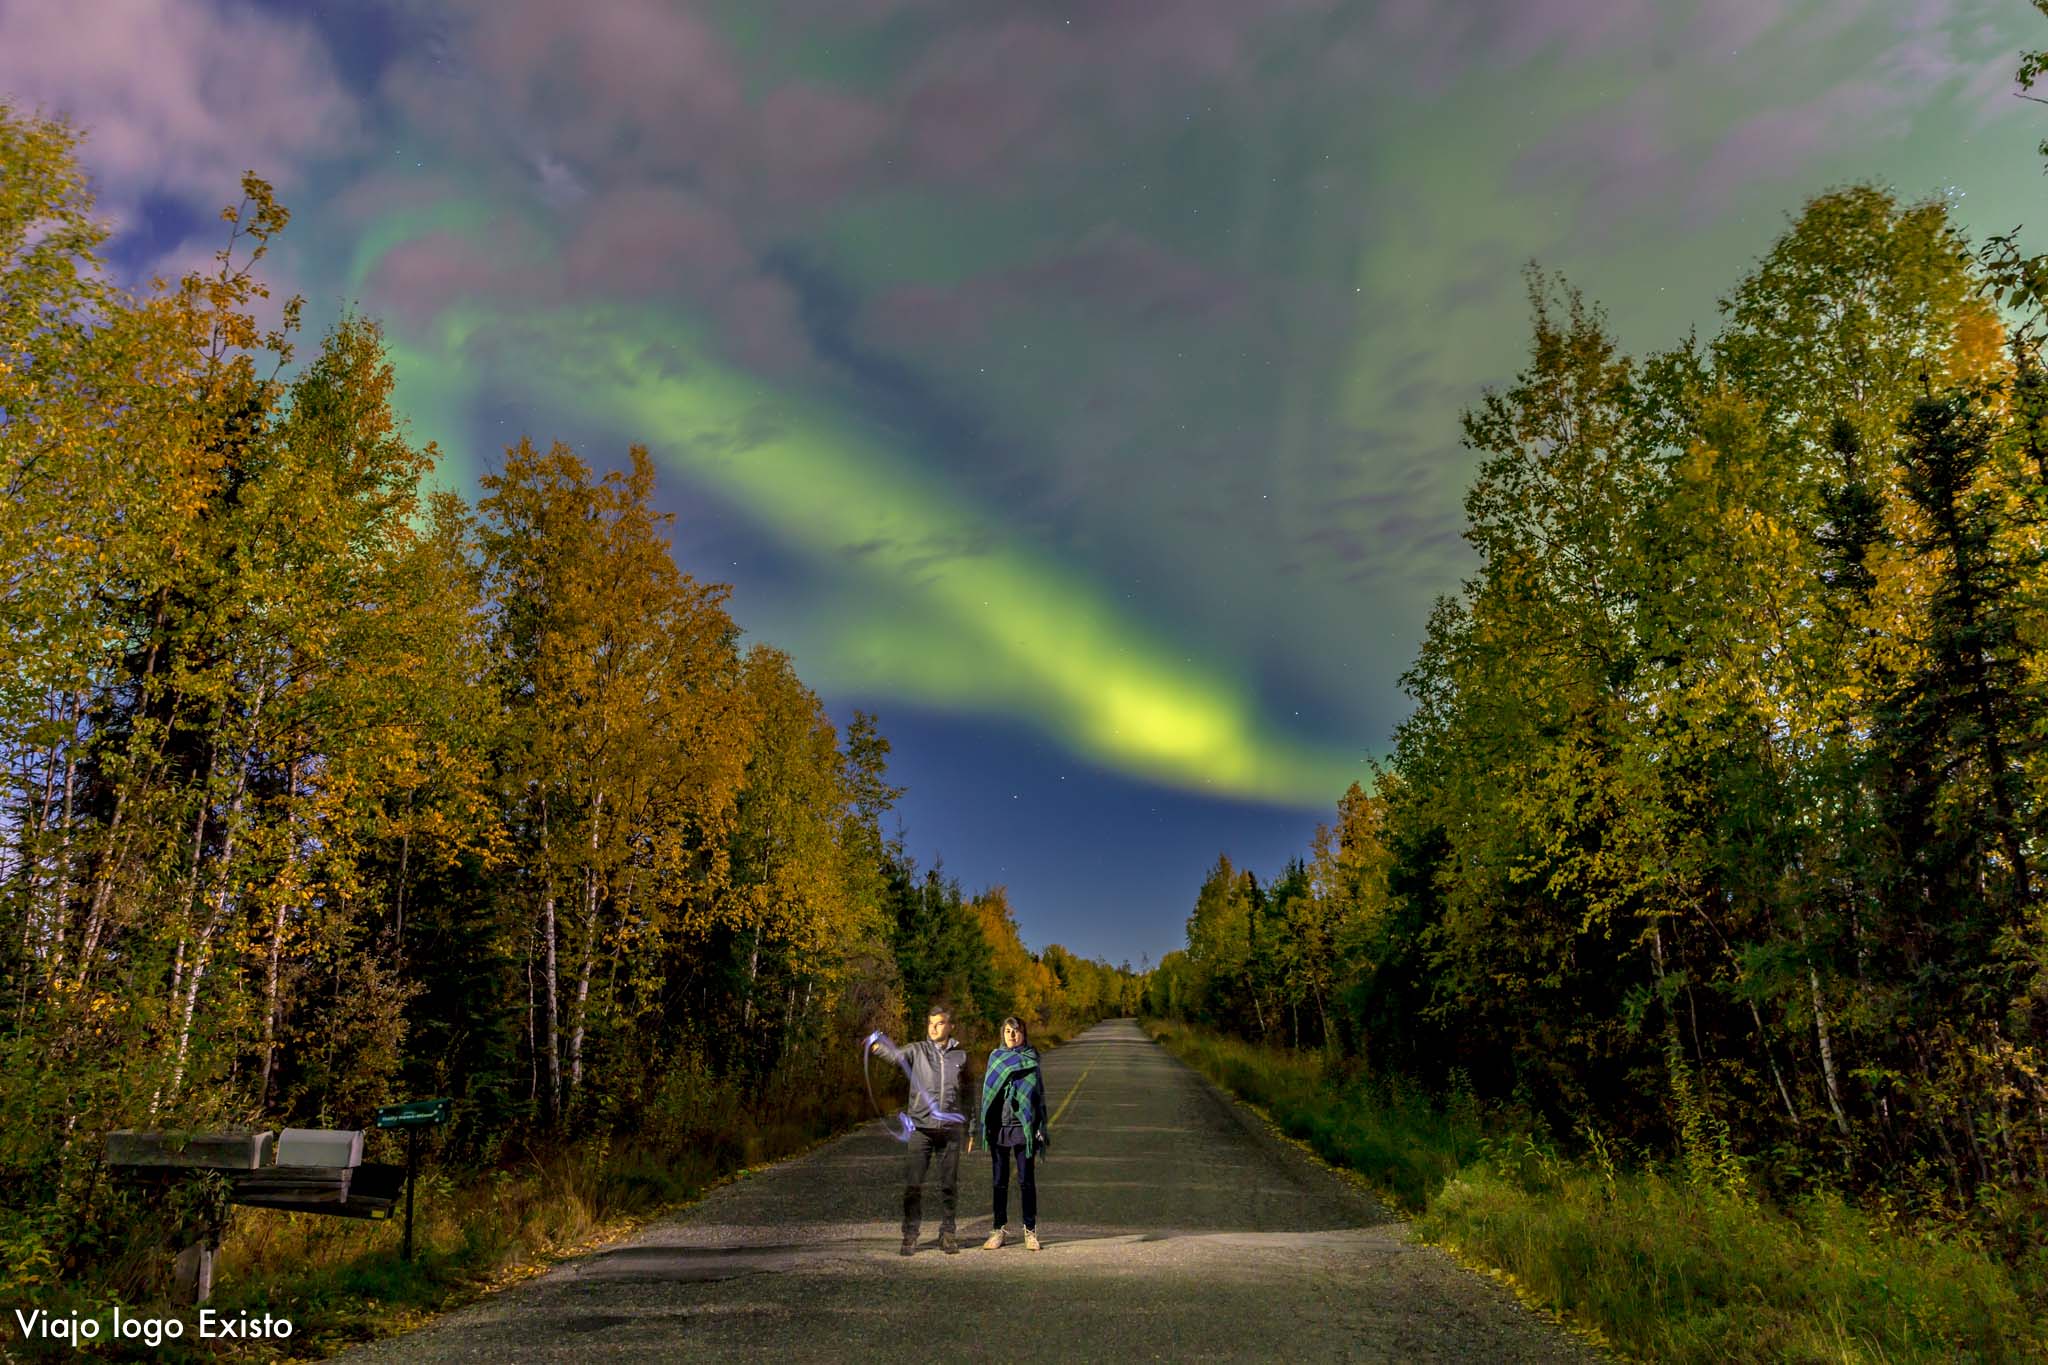 Cinco melhores lugares para ver a aurora boreal no mundo - Viajo